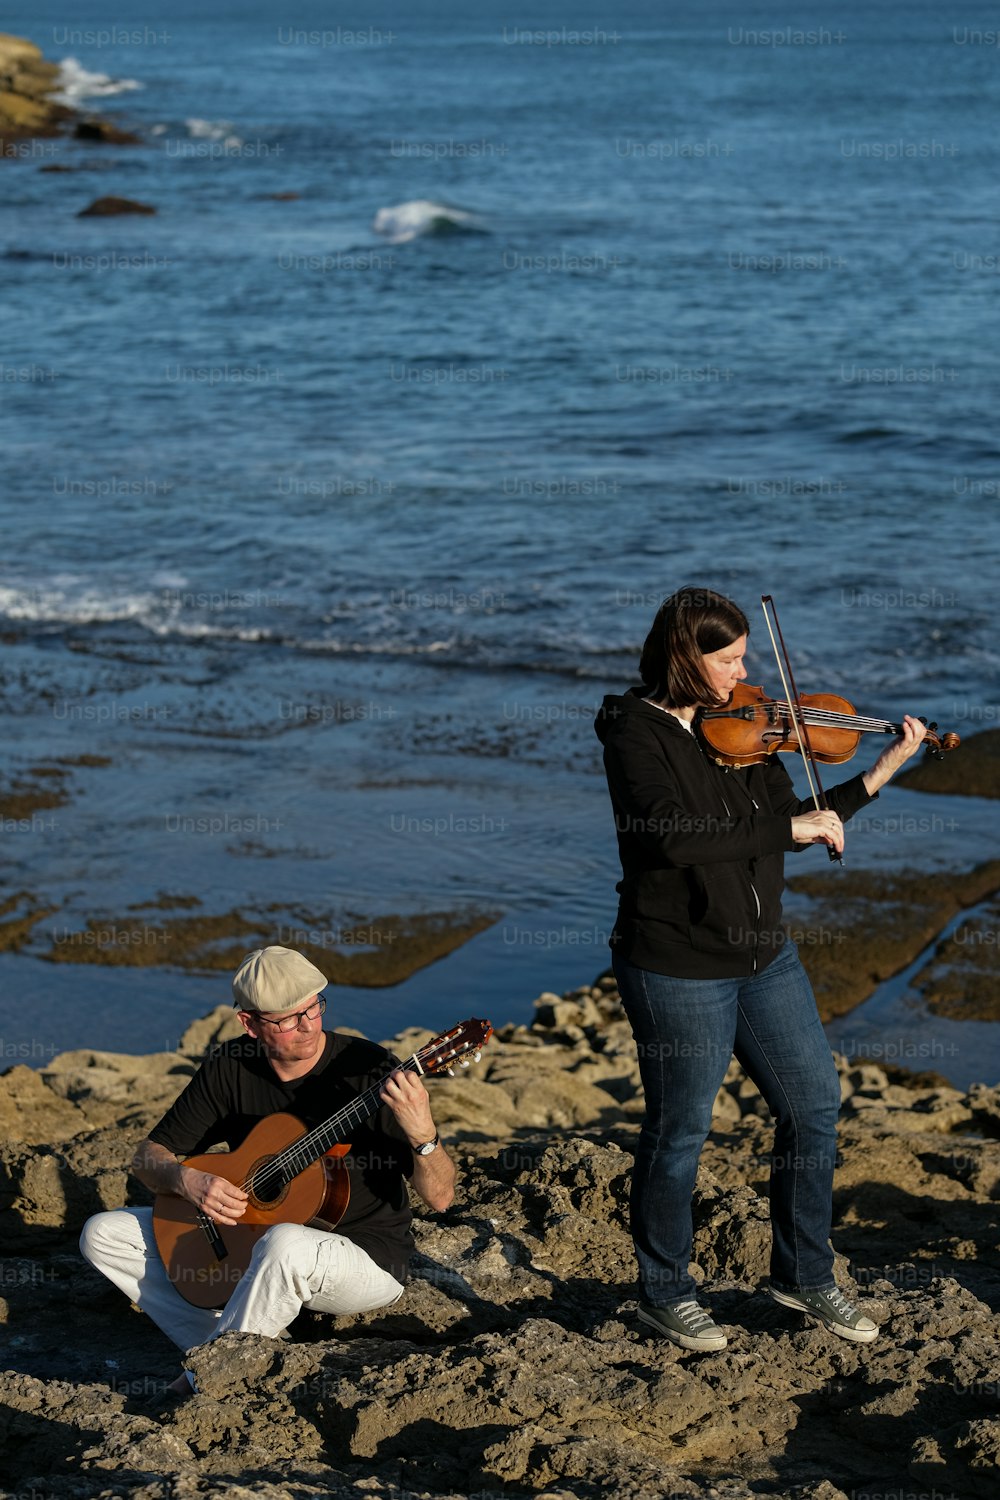 Una mujer tocando un violín junto a un hombre tocando una guitarra